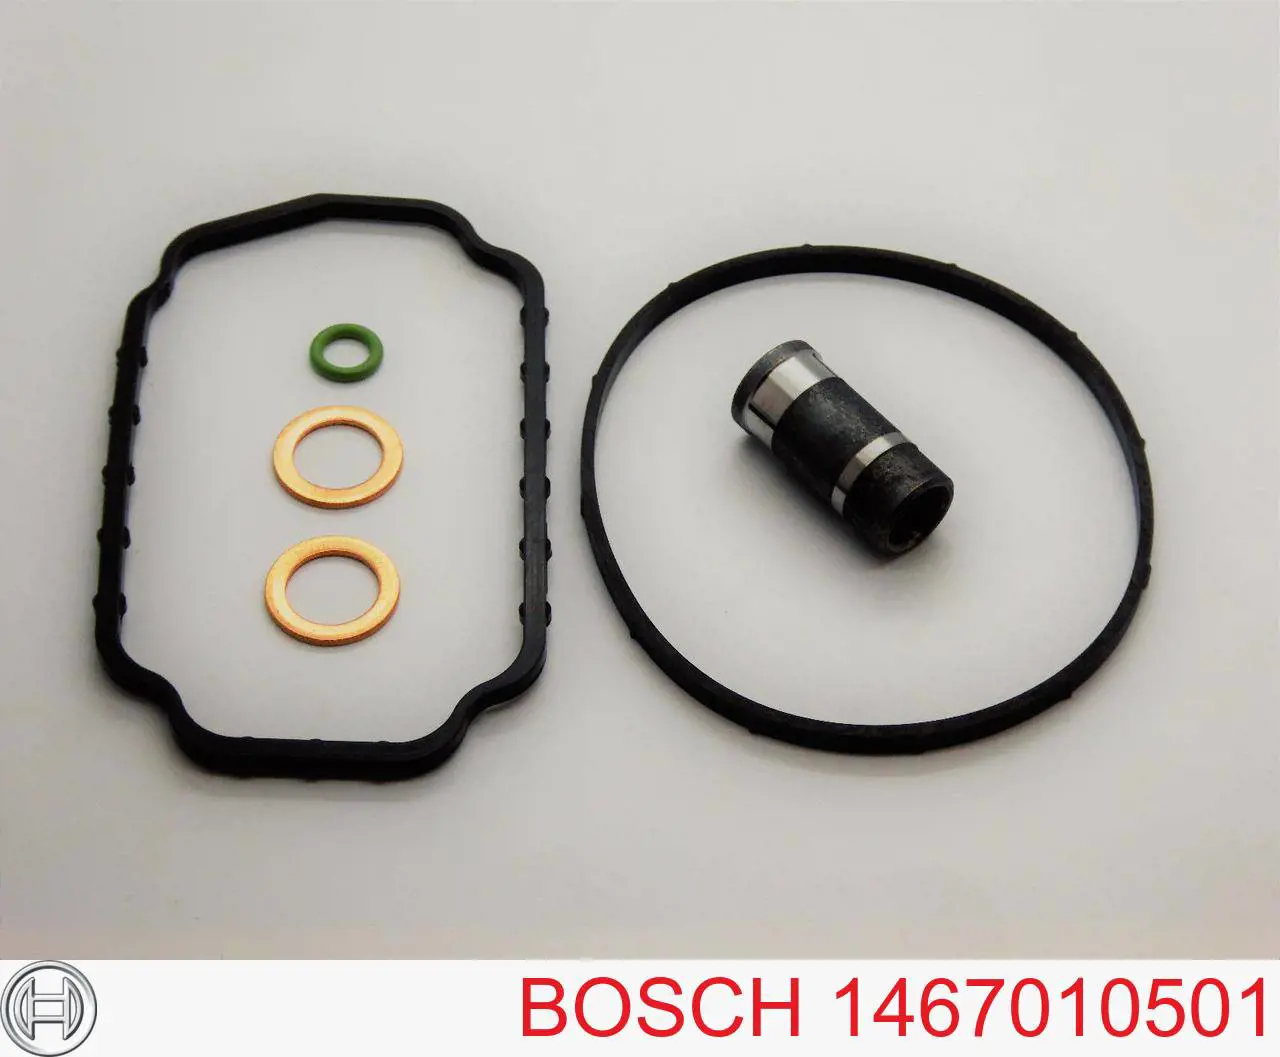 1467010501 Bosch kit de reparação da bomba de combustível de pressão alta